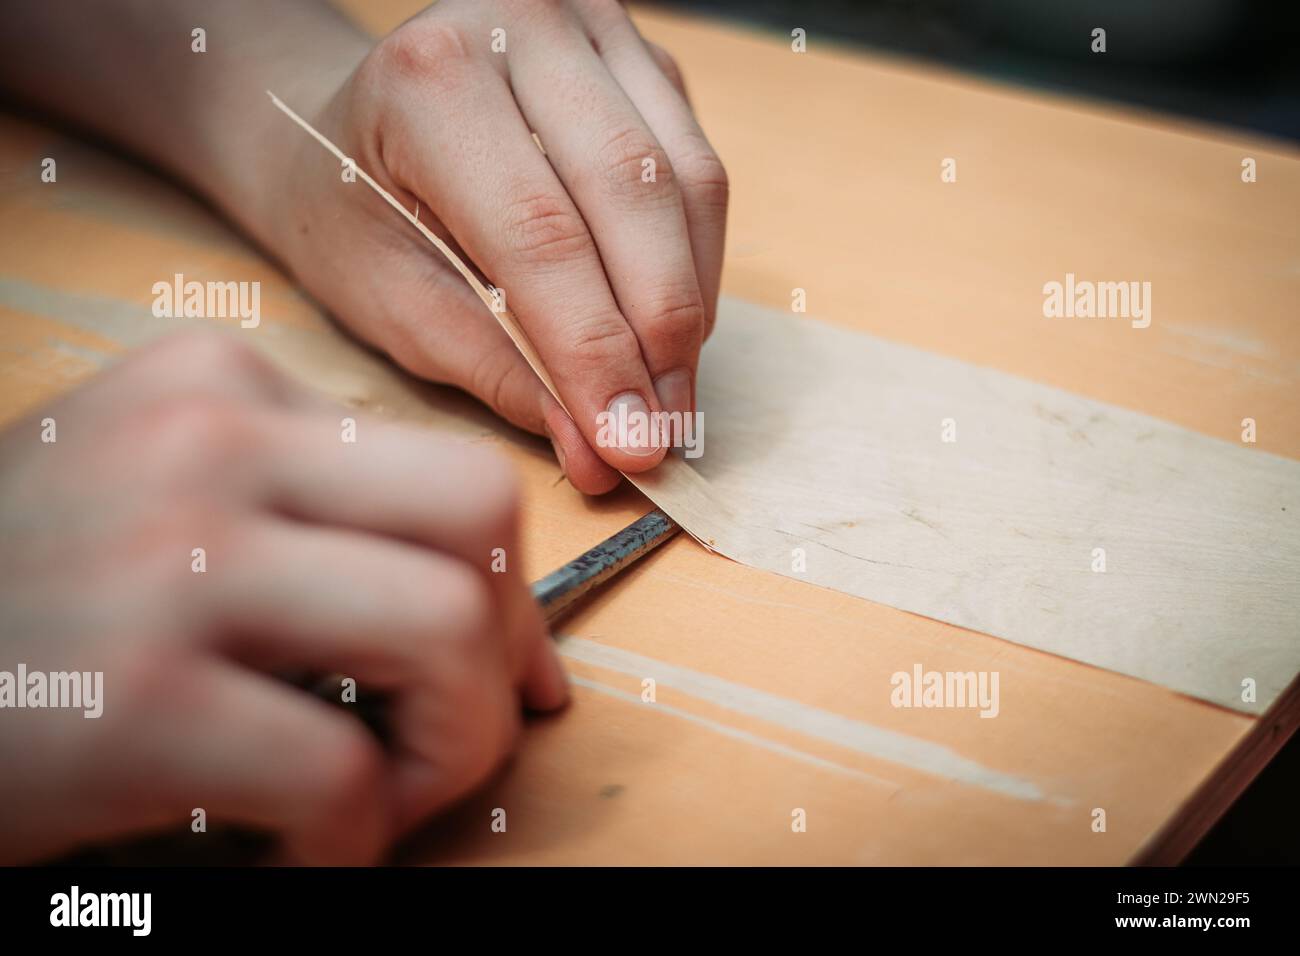 Primer plano de un adolescente usando herramientas que trabajan con sus manos aprendiendo un oficio de carpintería de madera. Foto de stock